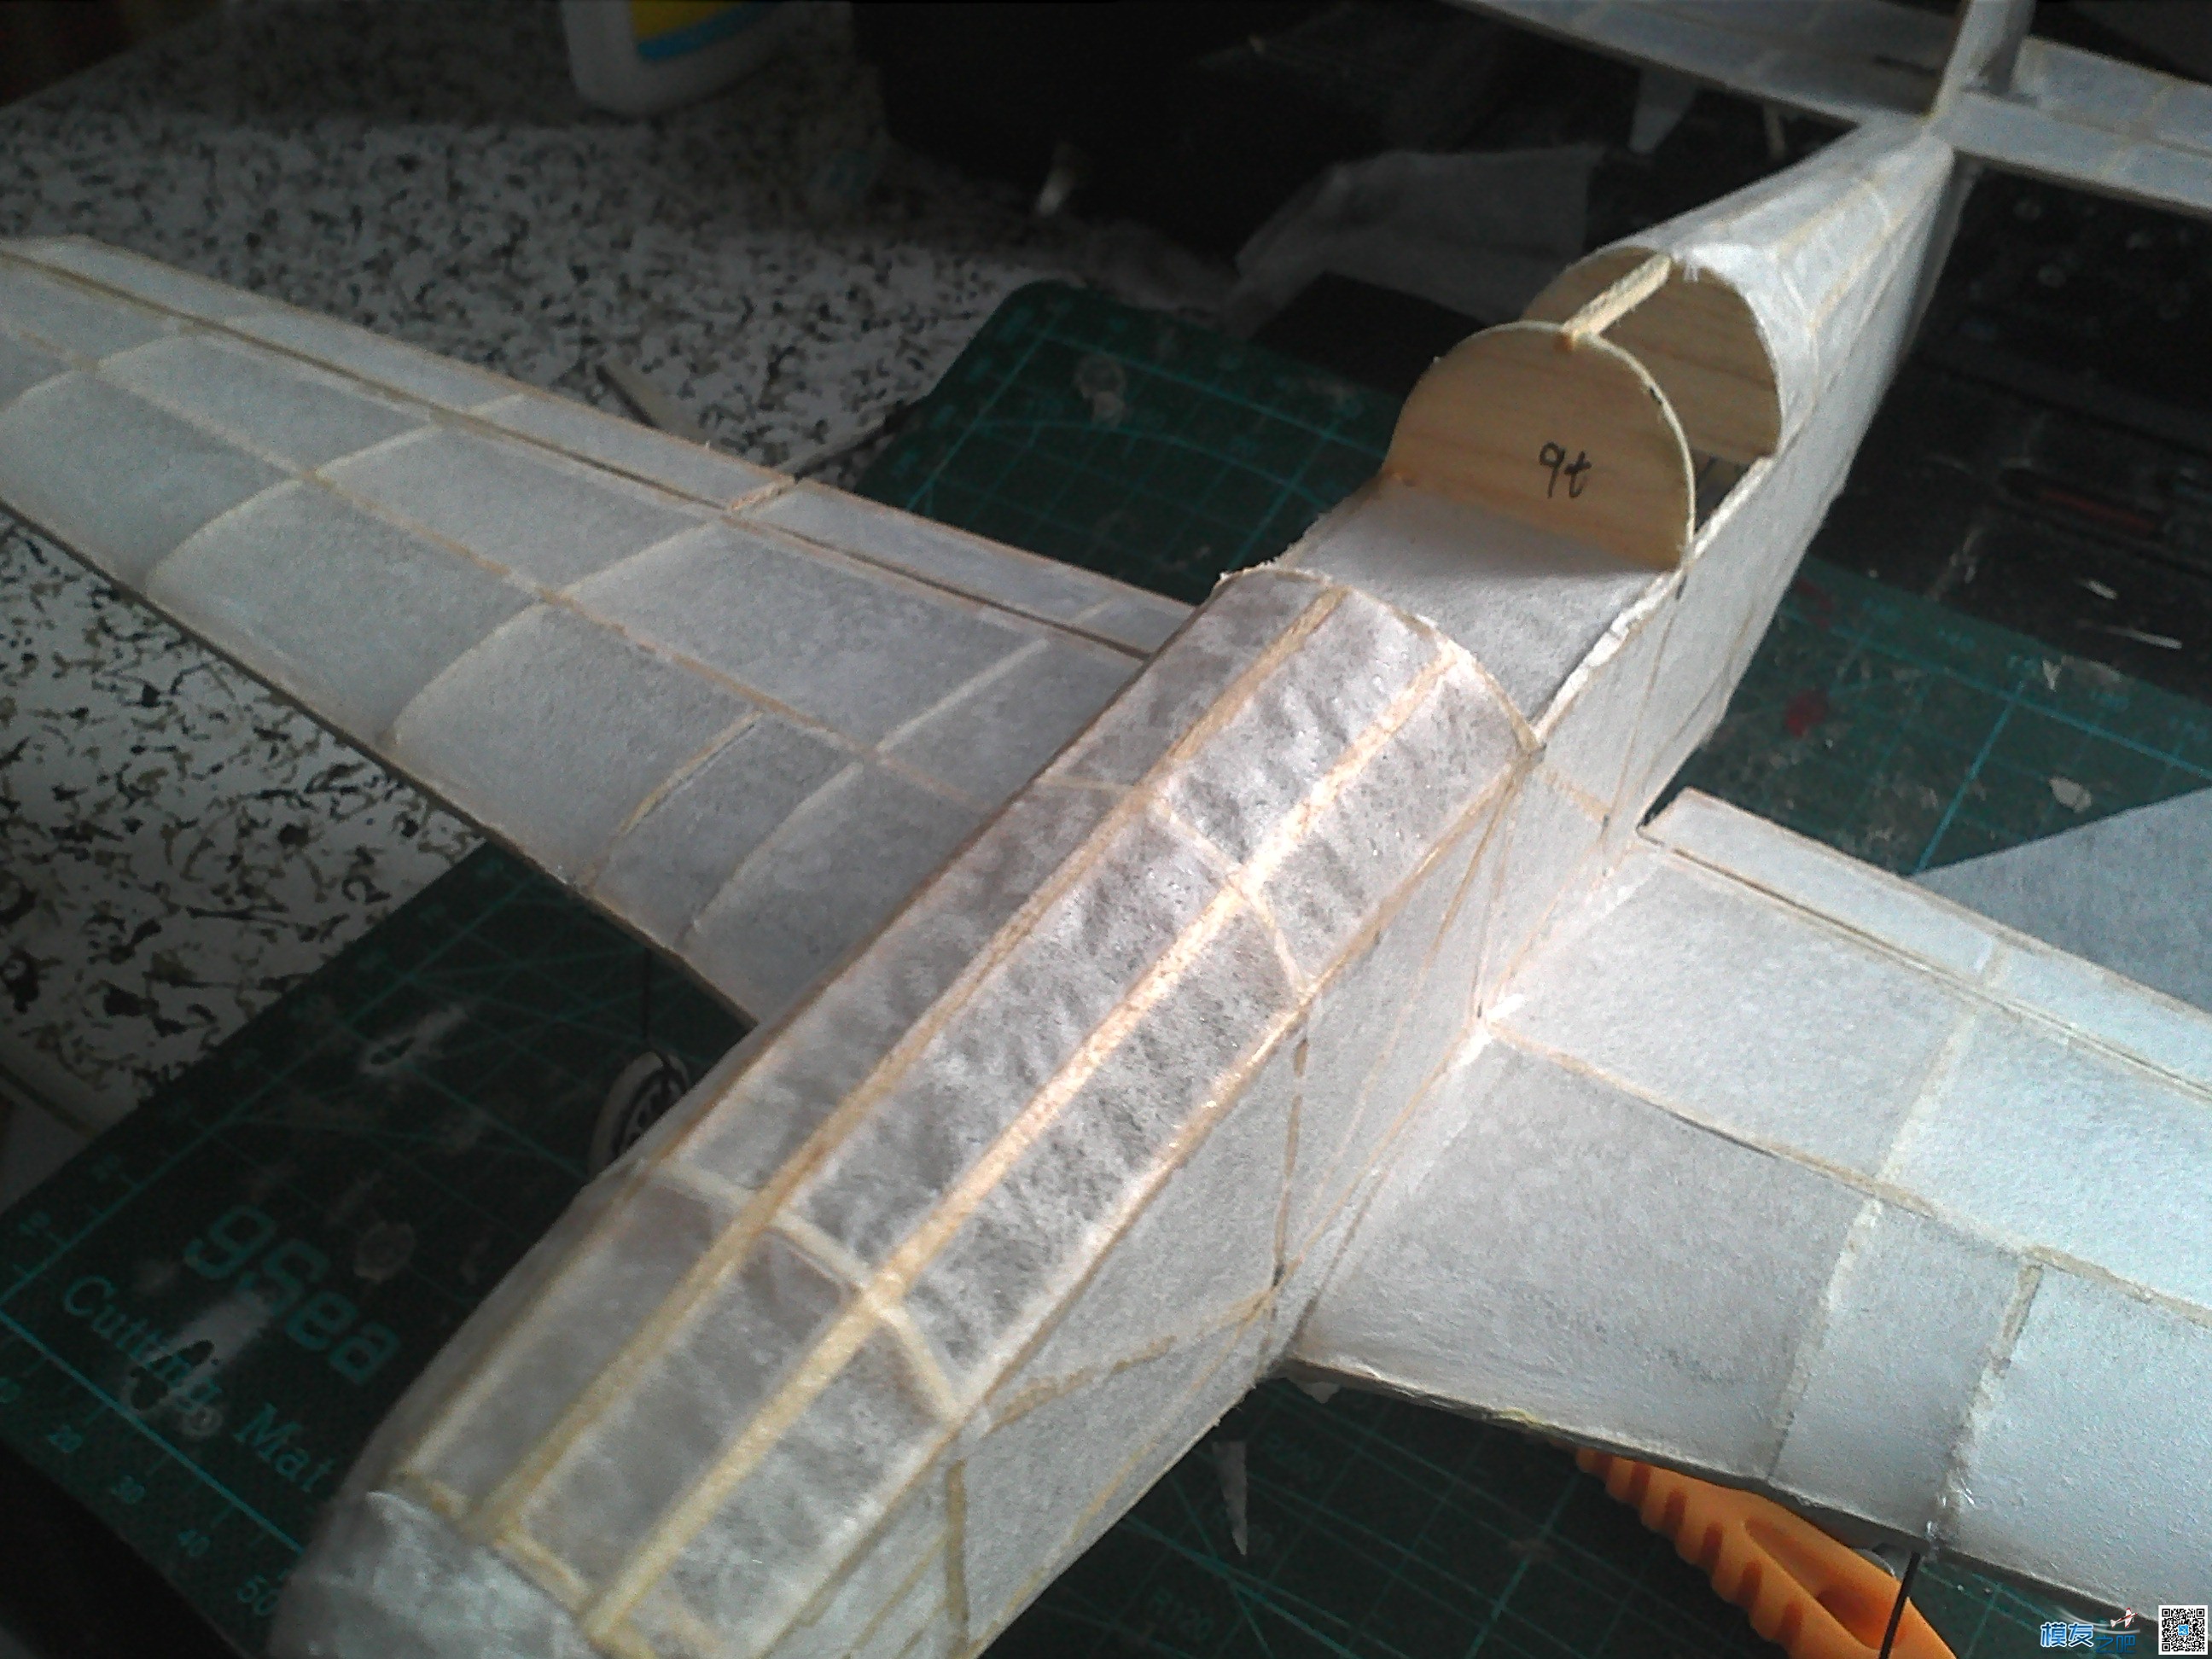 迷你轻木机野马P51a 固定翼,舵机,图纸,接收机 作者:飞翔的橡皮筋 7191 